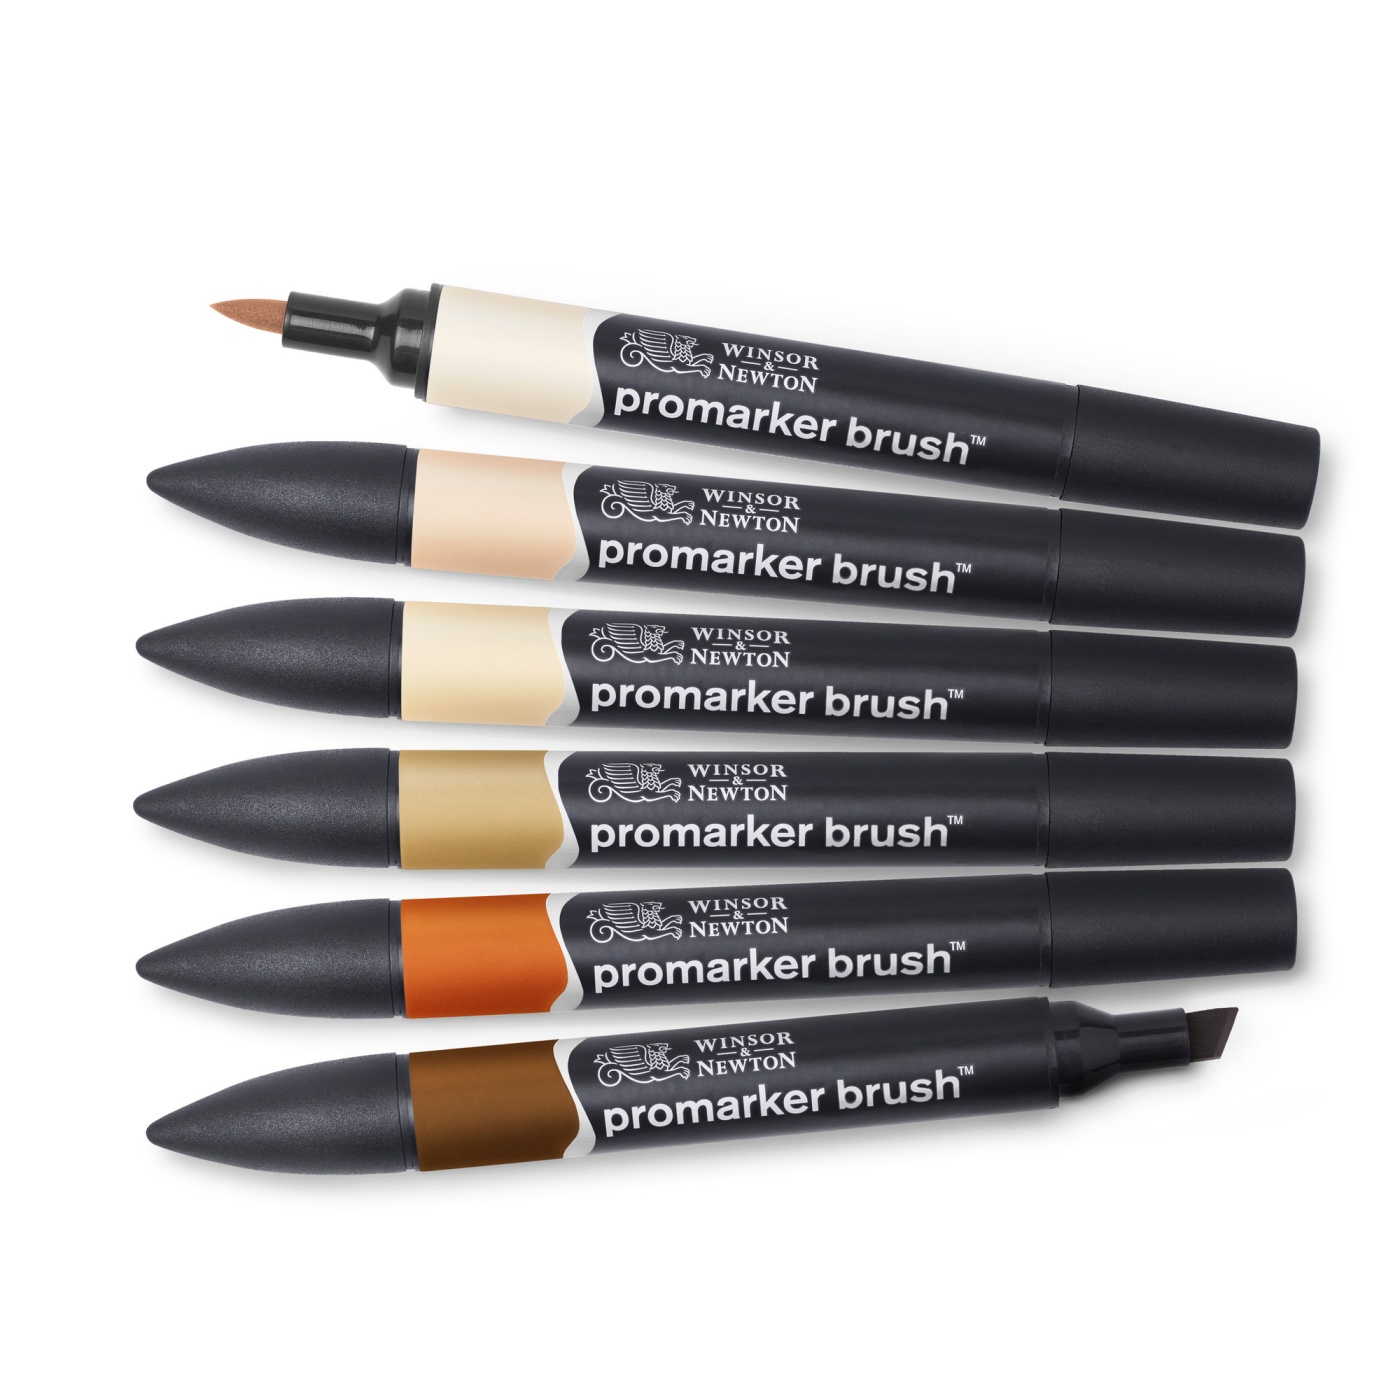 BrushMarker sæt 6 stk Skin Tones i gruppen Penne / Kunstnerpenne / Penselpenne hos Pen Store (100553)